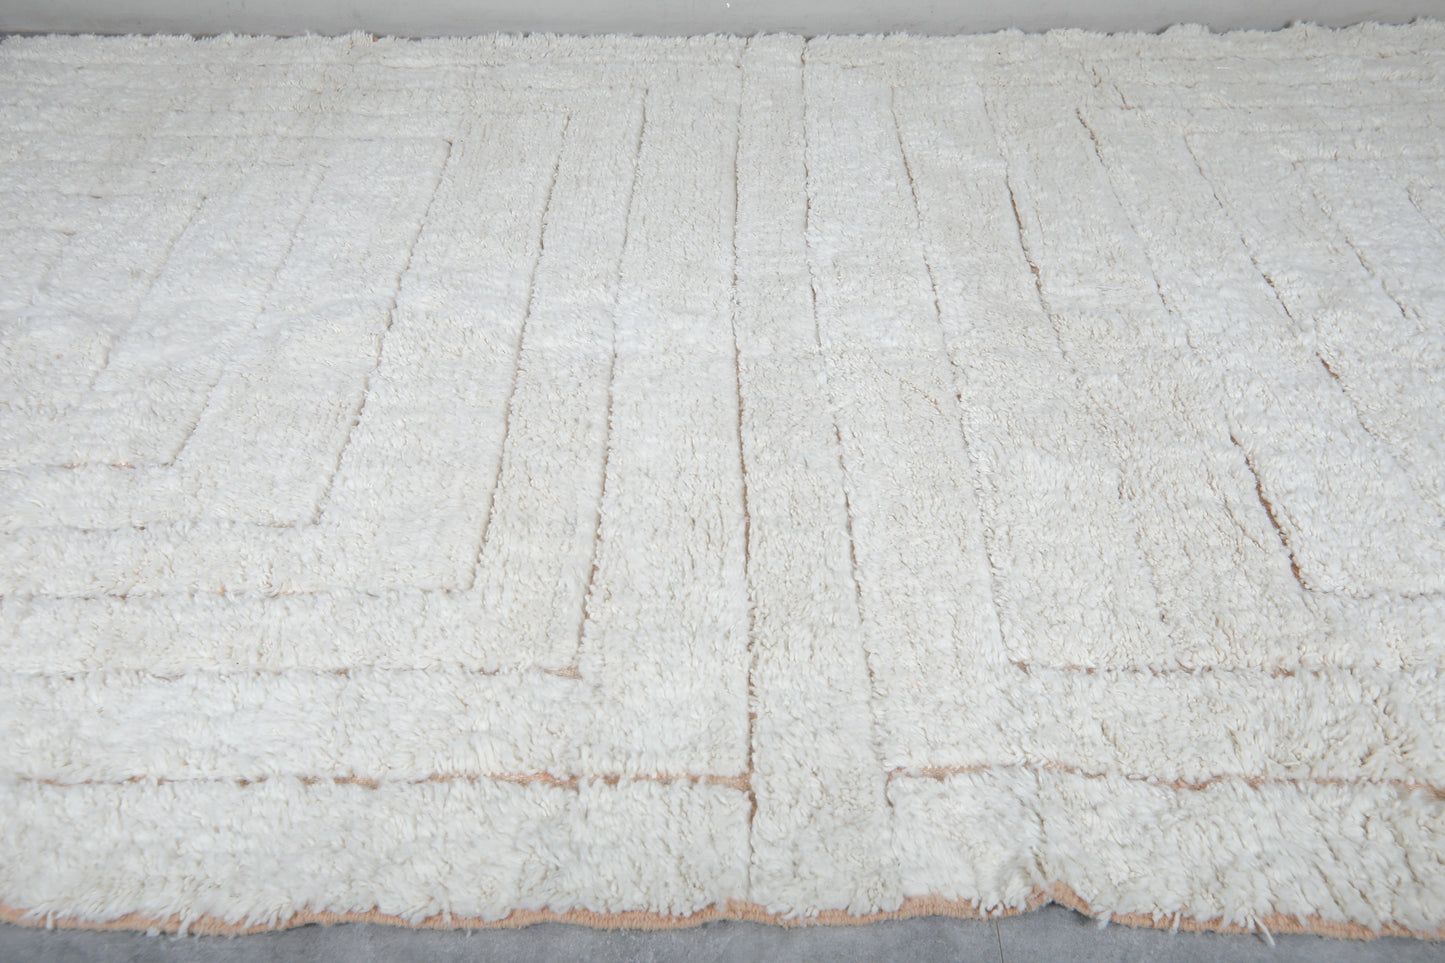 Moroccan rug 8.5 X 13.2 Feet